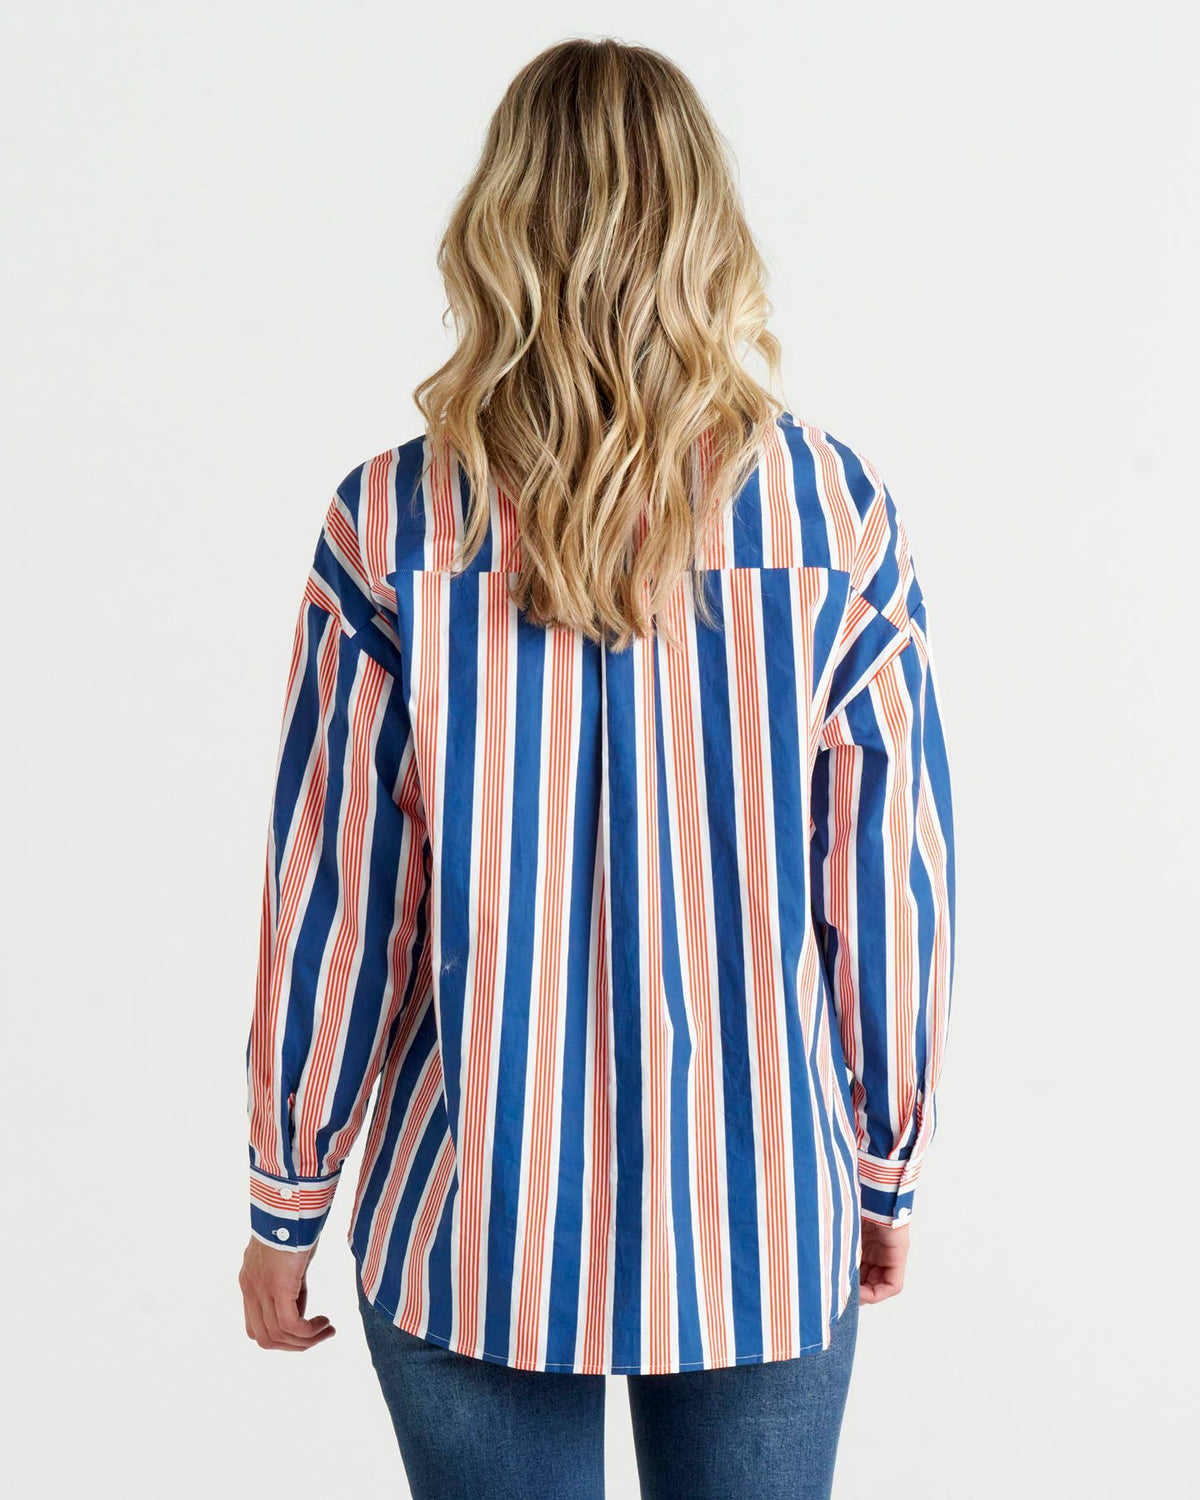 Saskia Shirt Blue White Stripes